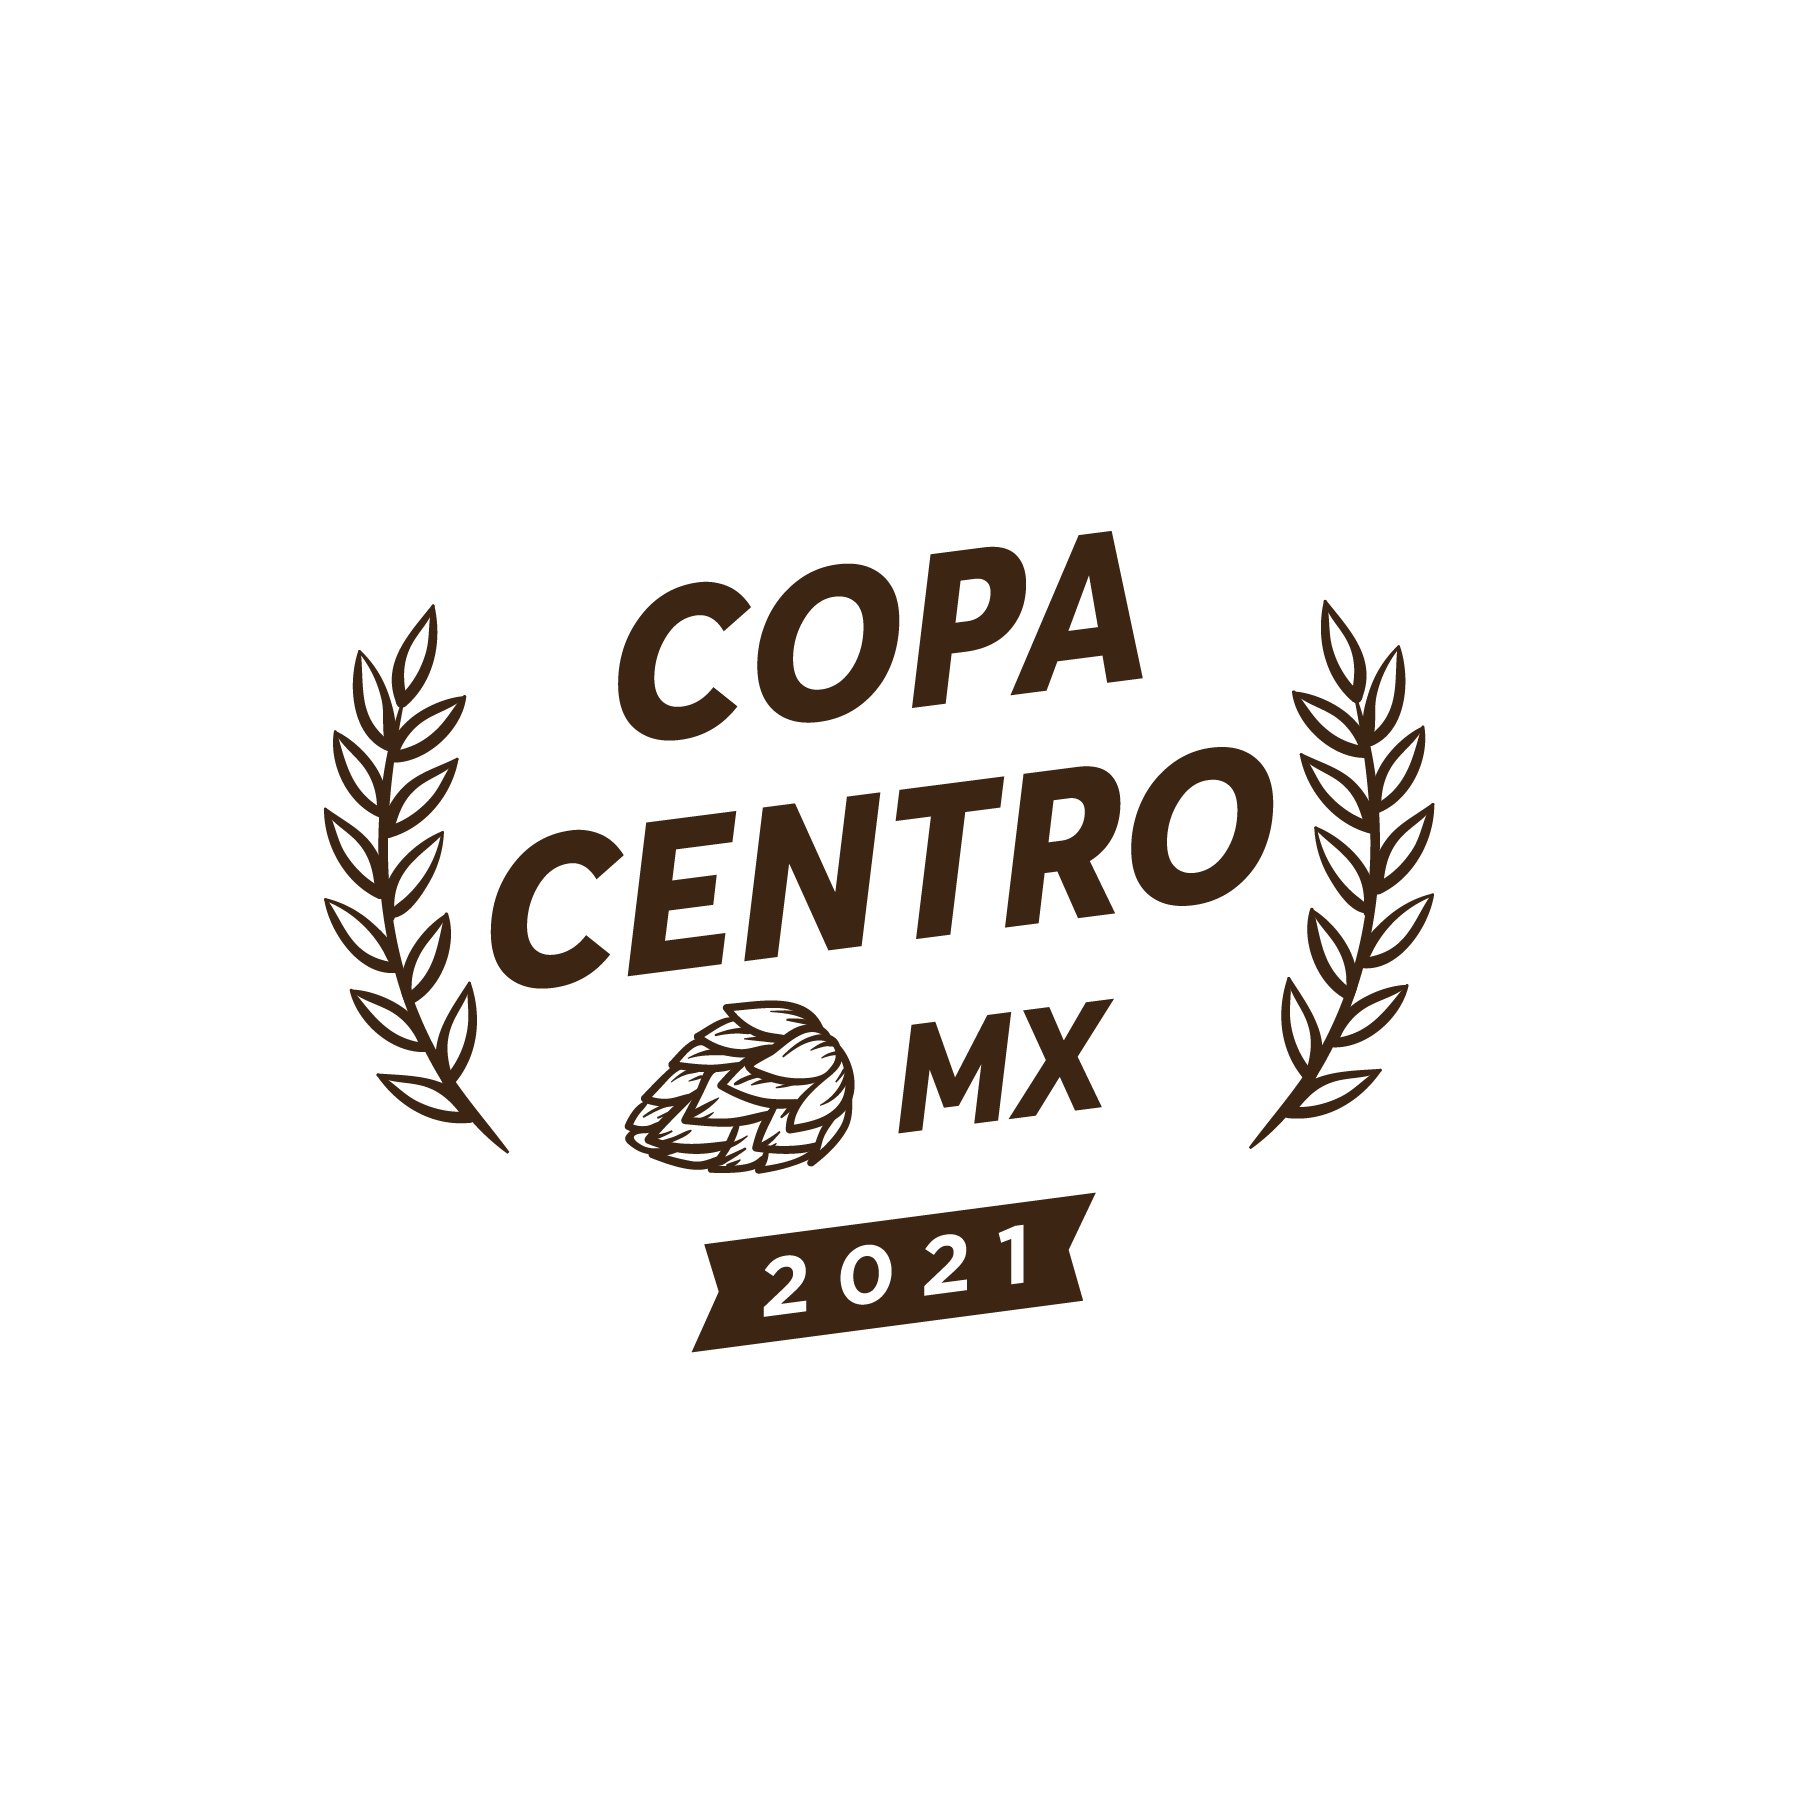 Copa CentroMx